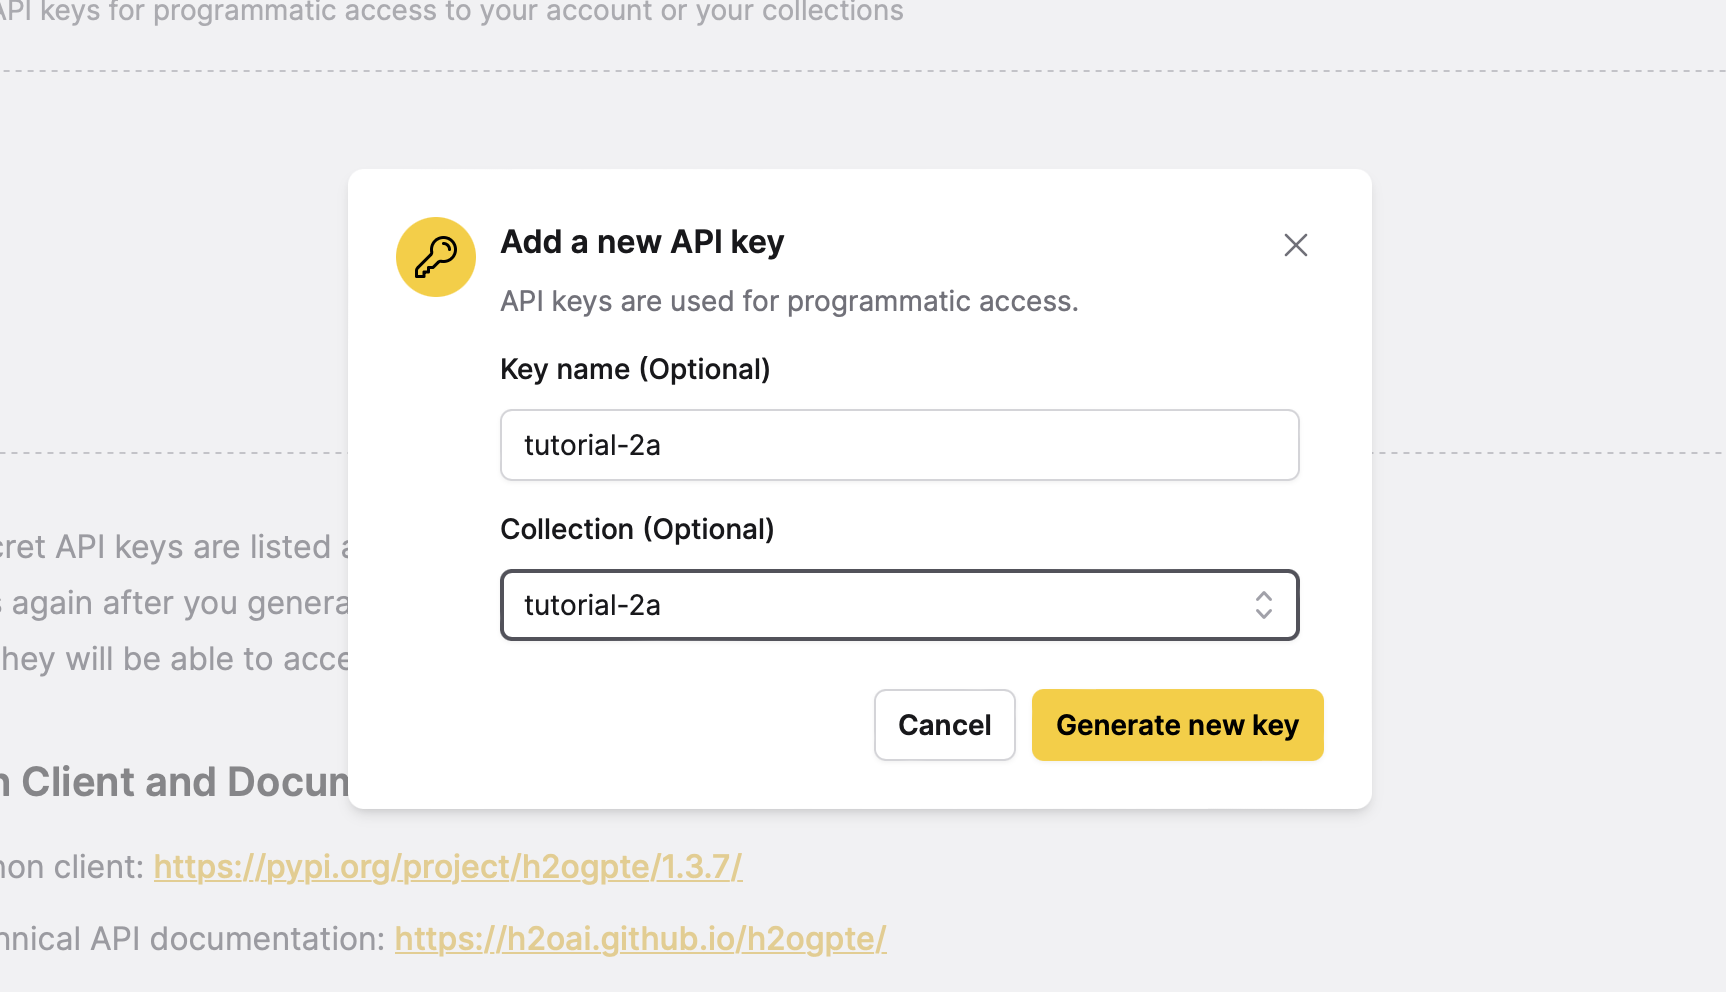 Add a new API Key